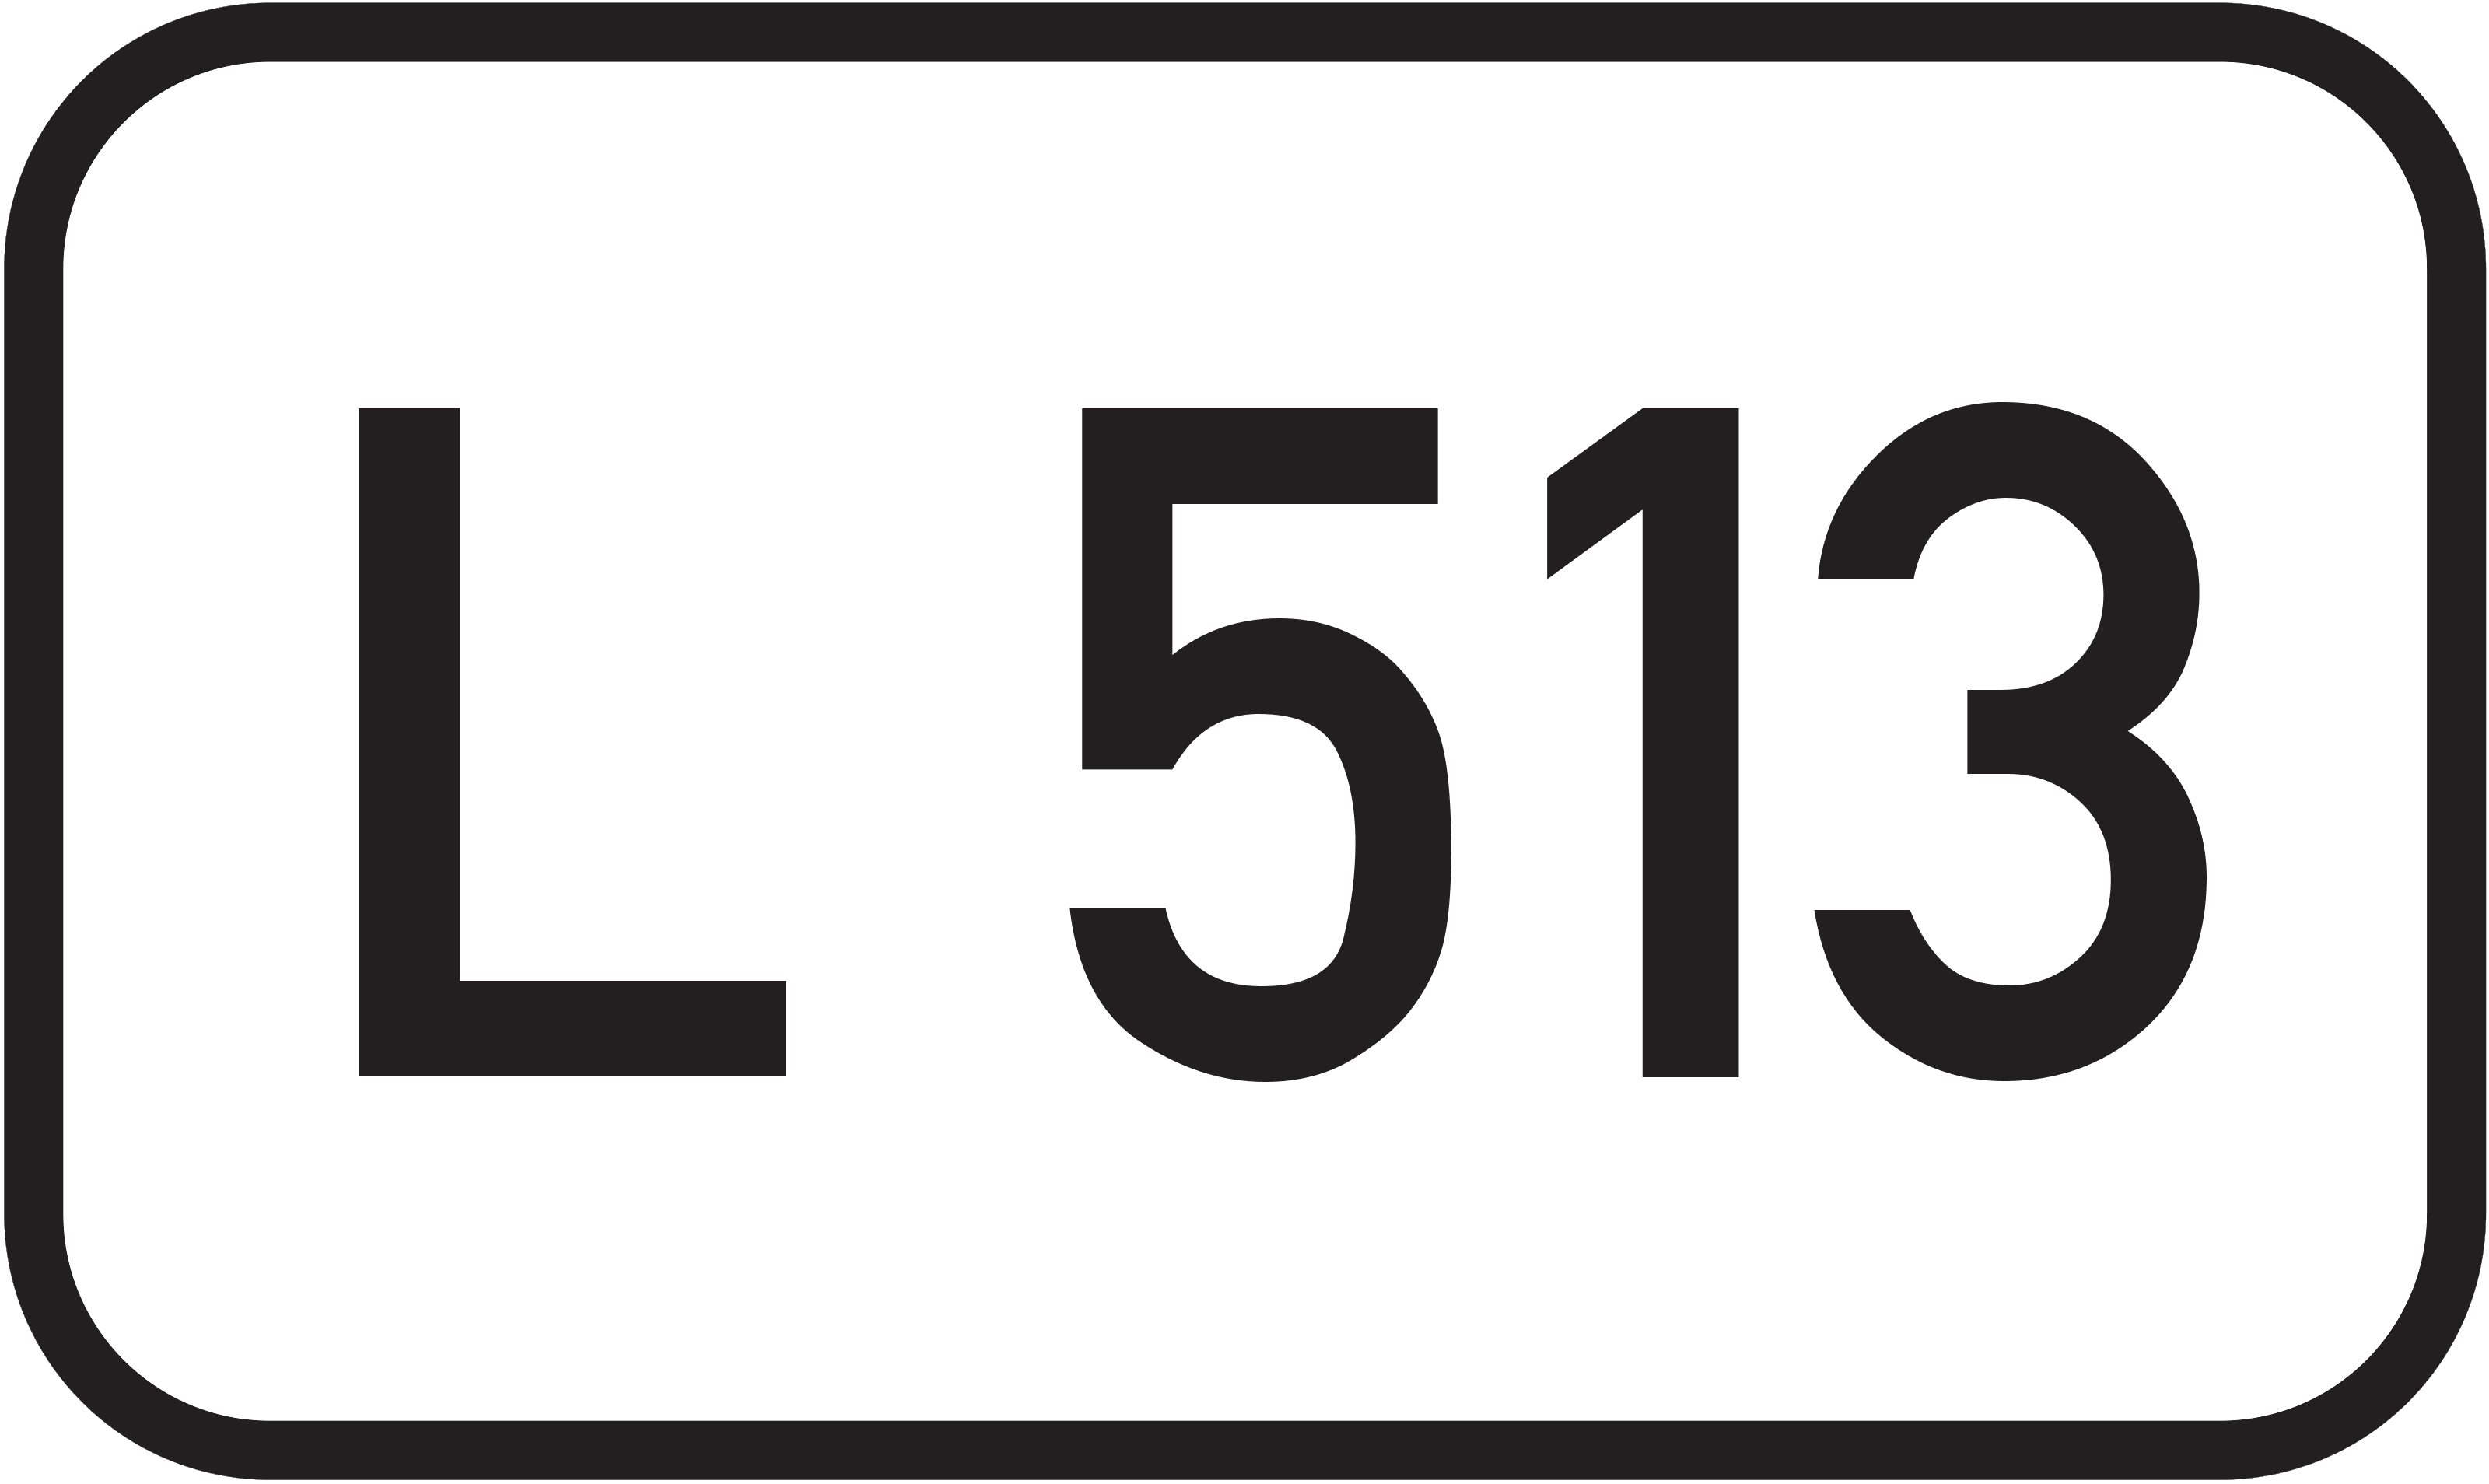 Landesstraße L 513